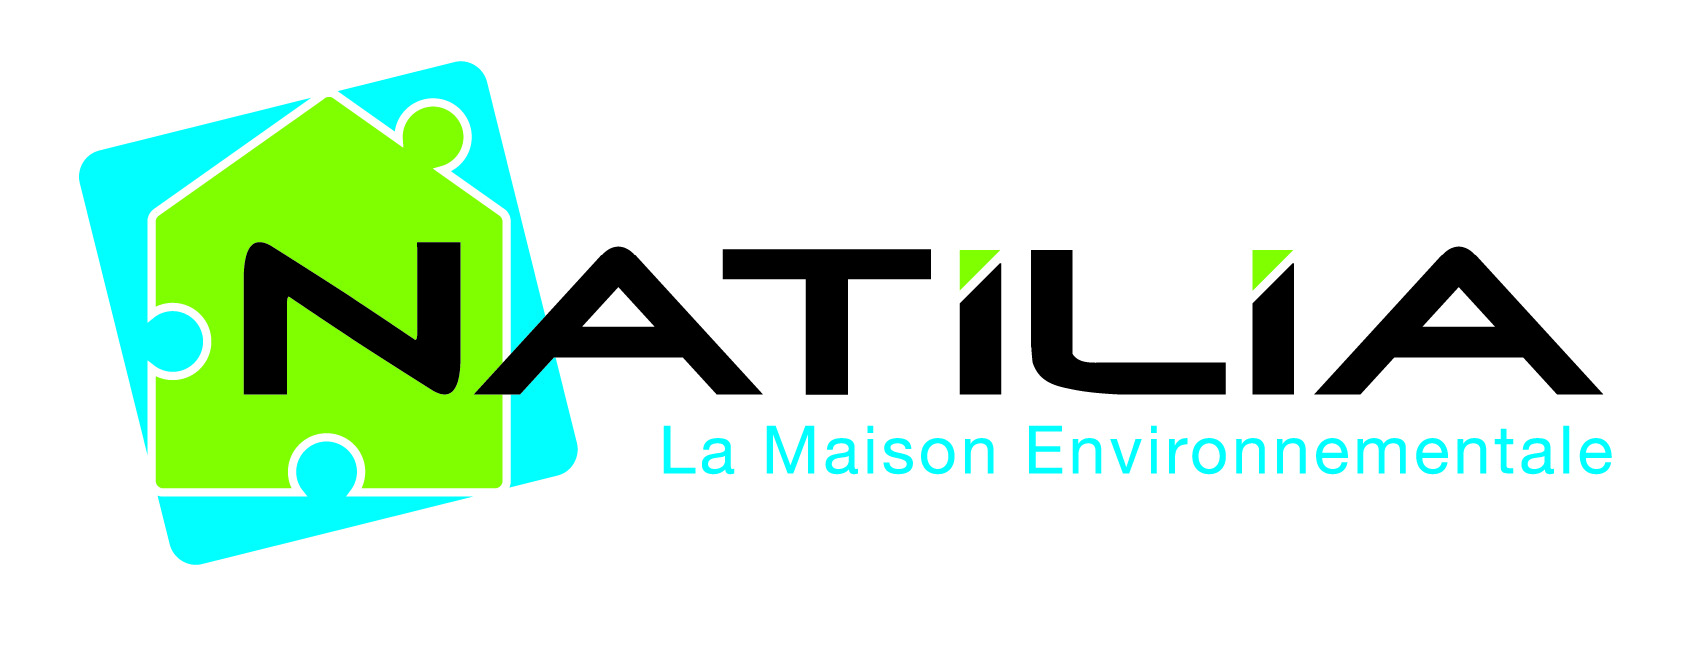 Logo de NATILIA LE MANS pour l'annonce 29054243